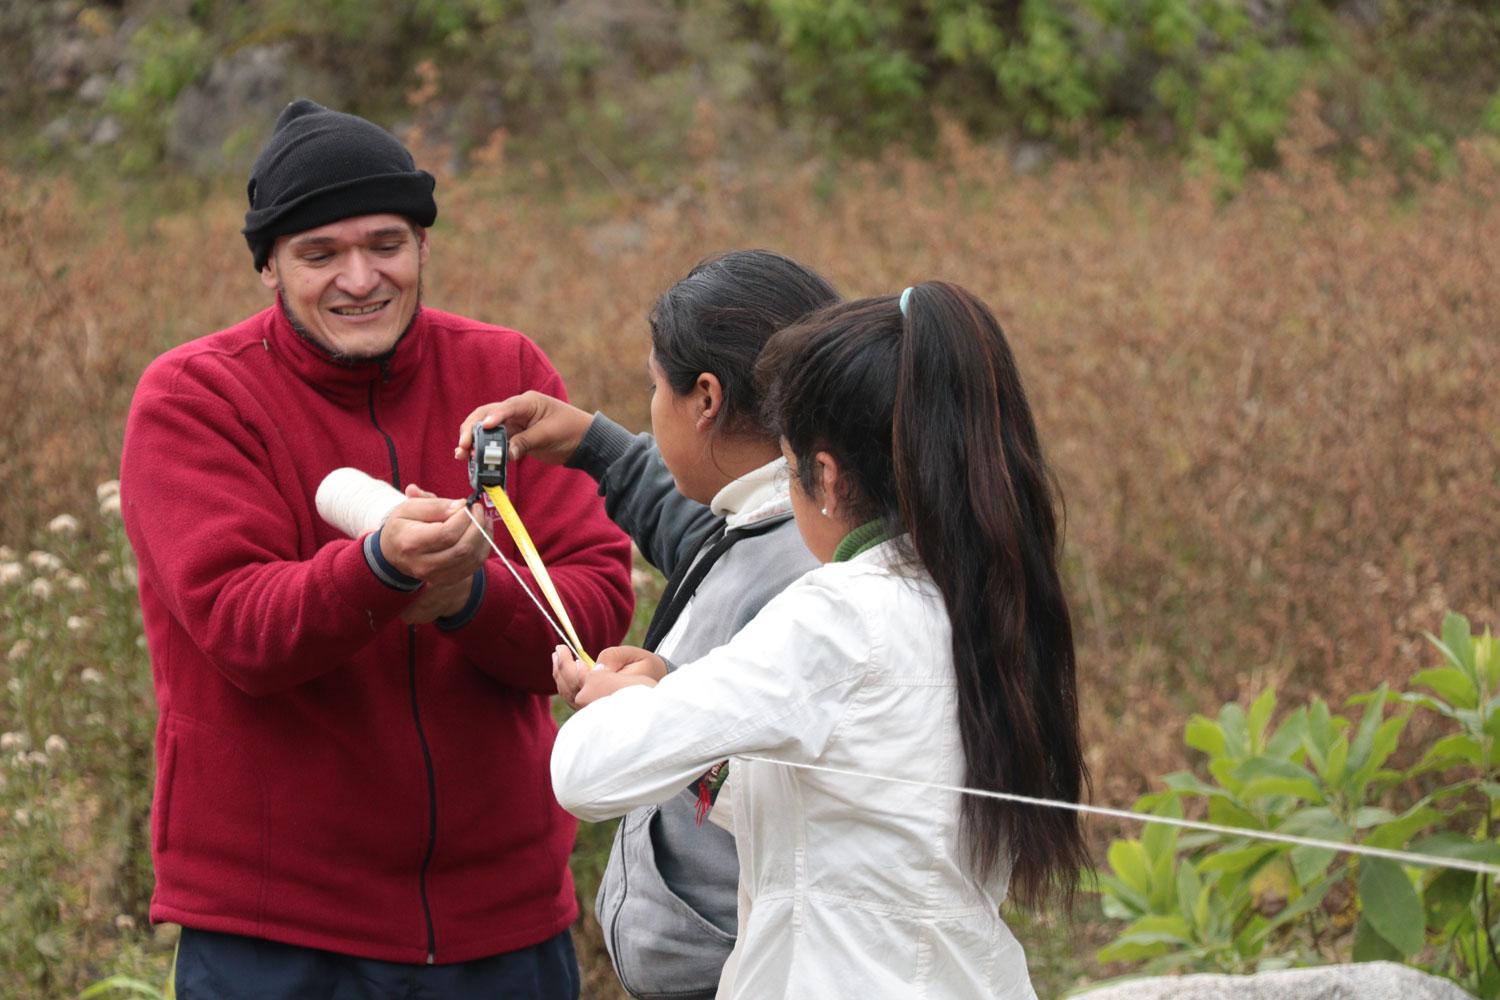 PROYECTO. Junto al profesor Núñez, los chicos trabajan en un plan de reforestación de la zona.